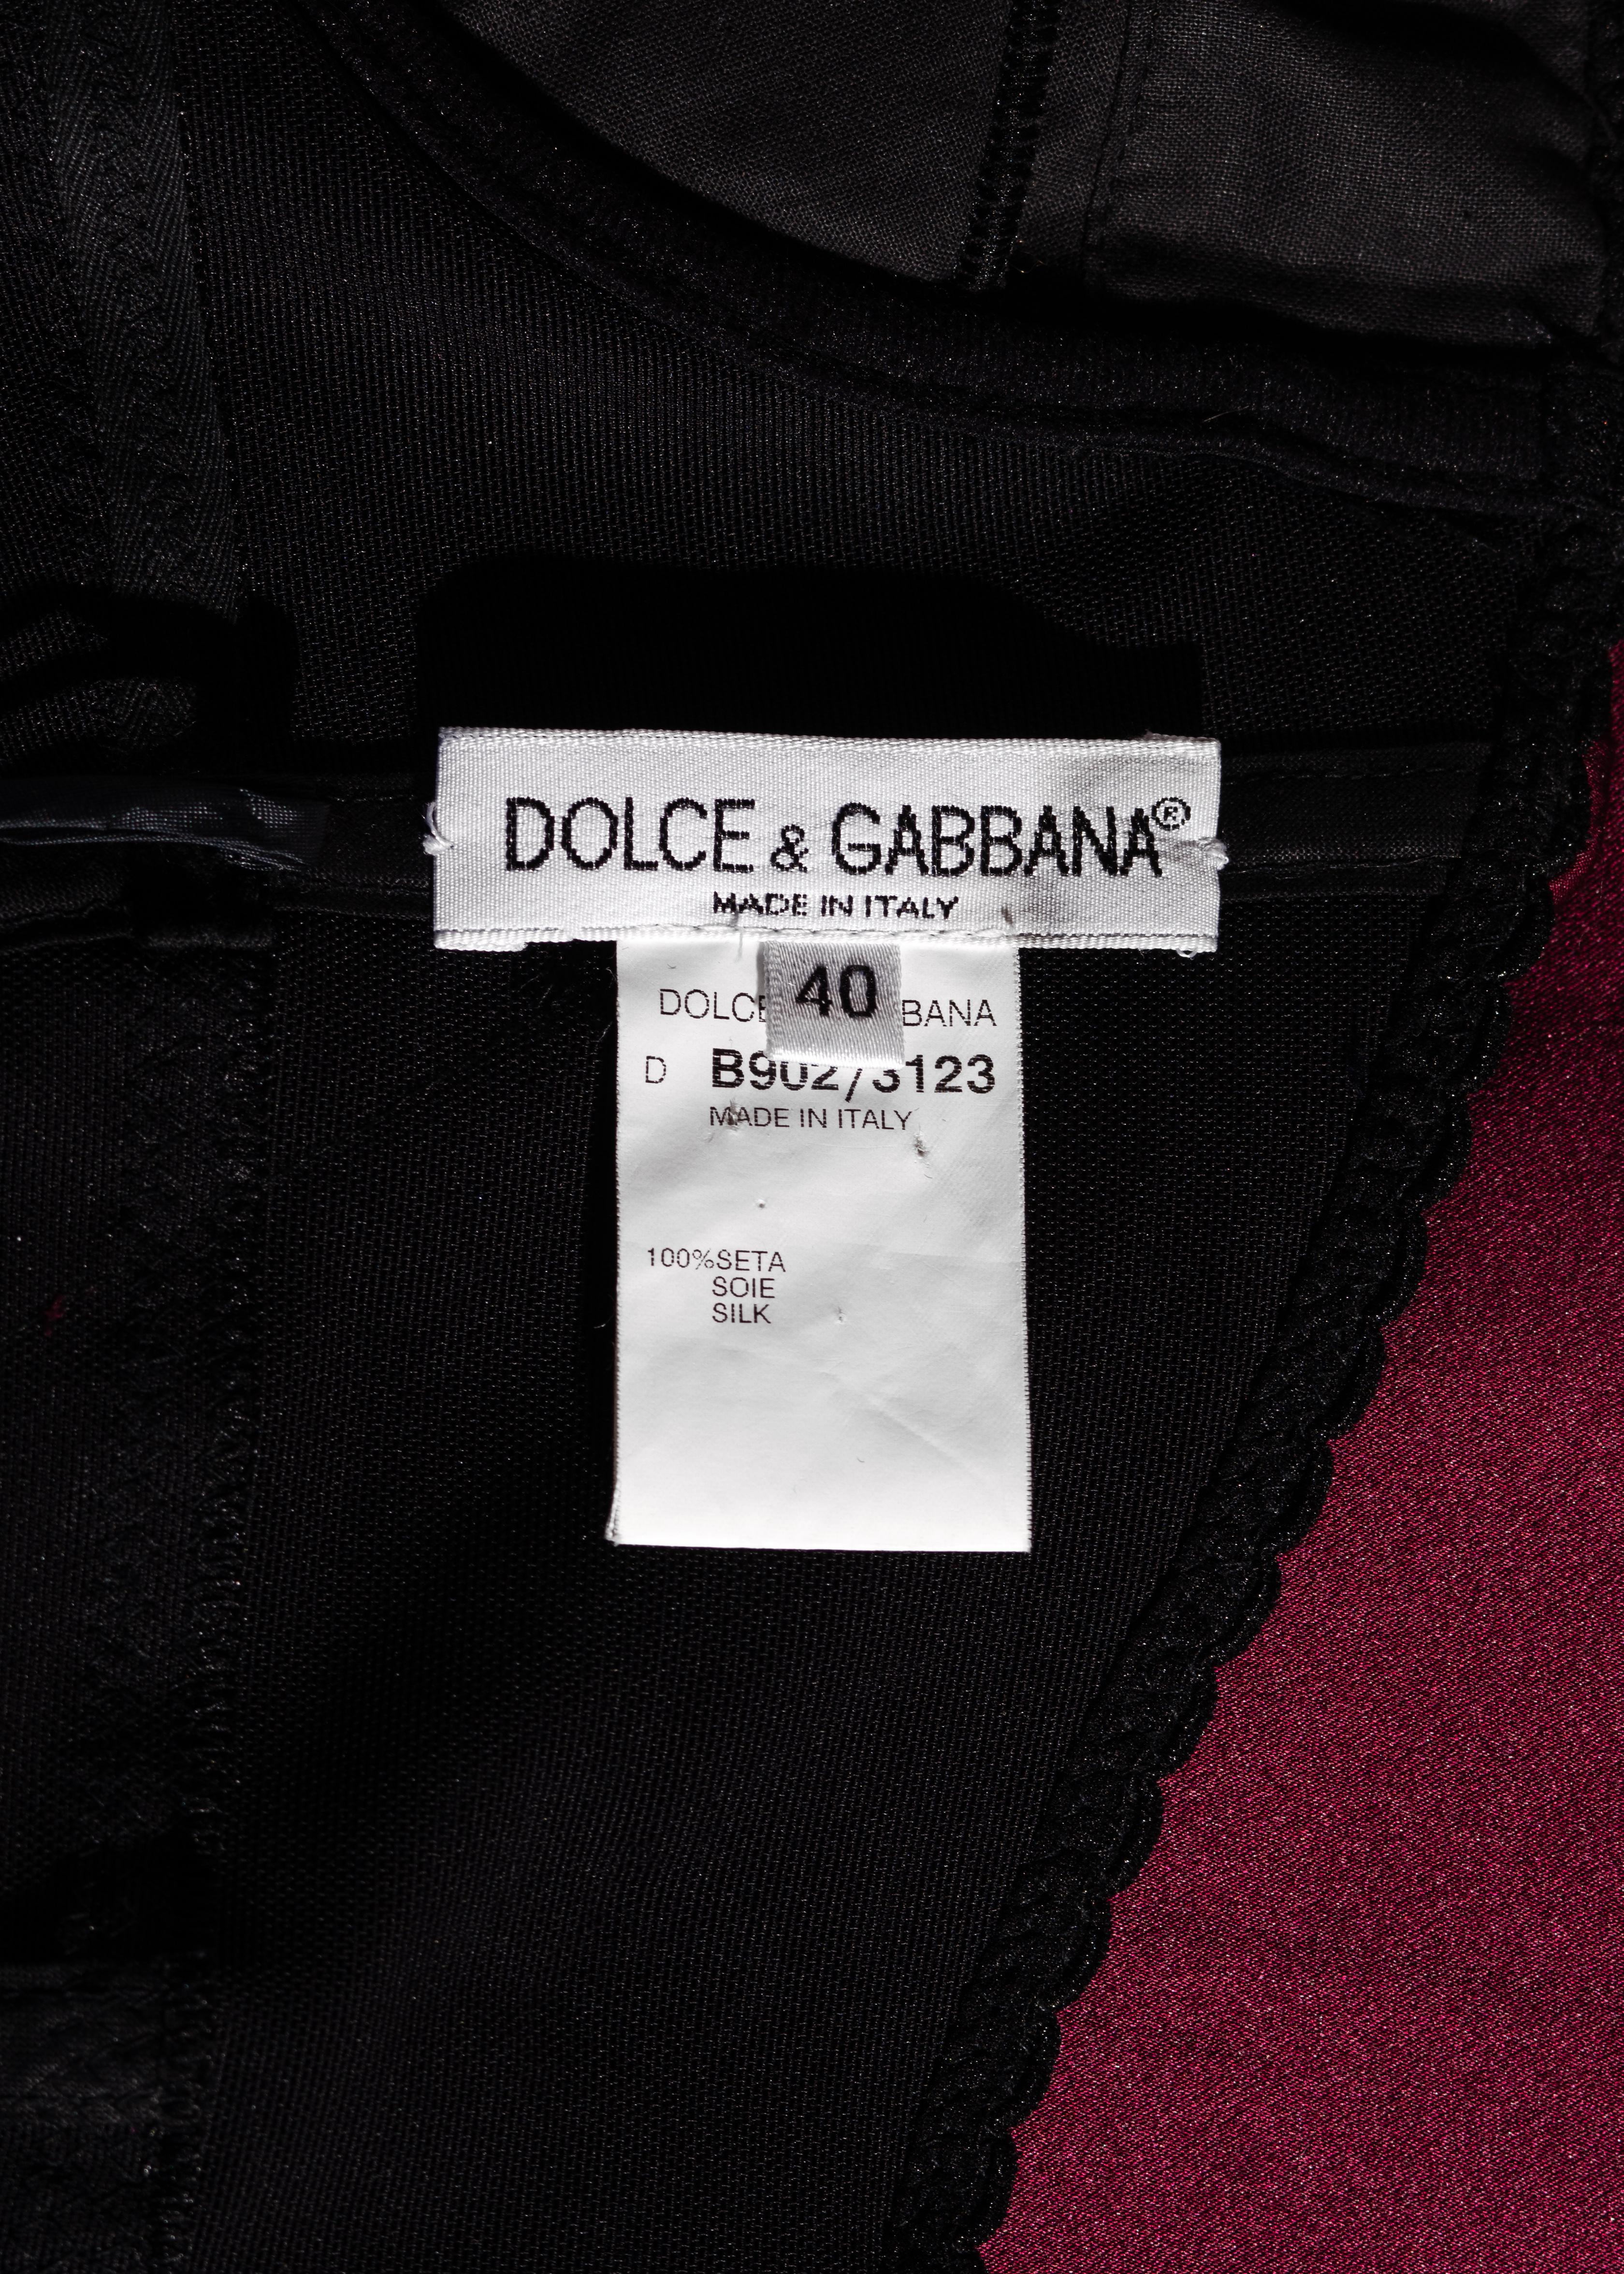 Dolce & Gabbana hand painted burgundy silk evening dress, fw 1998 2